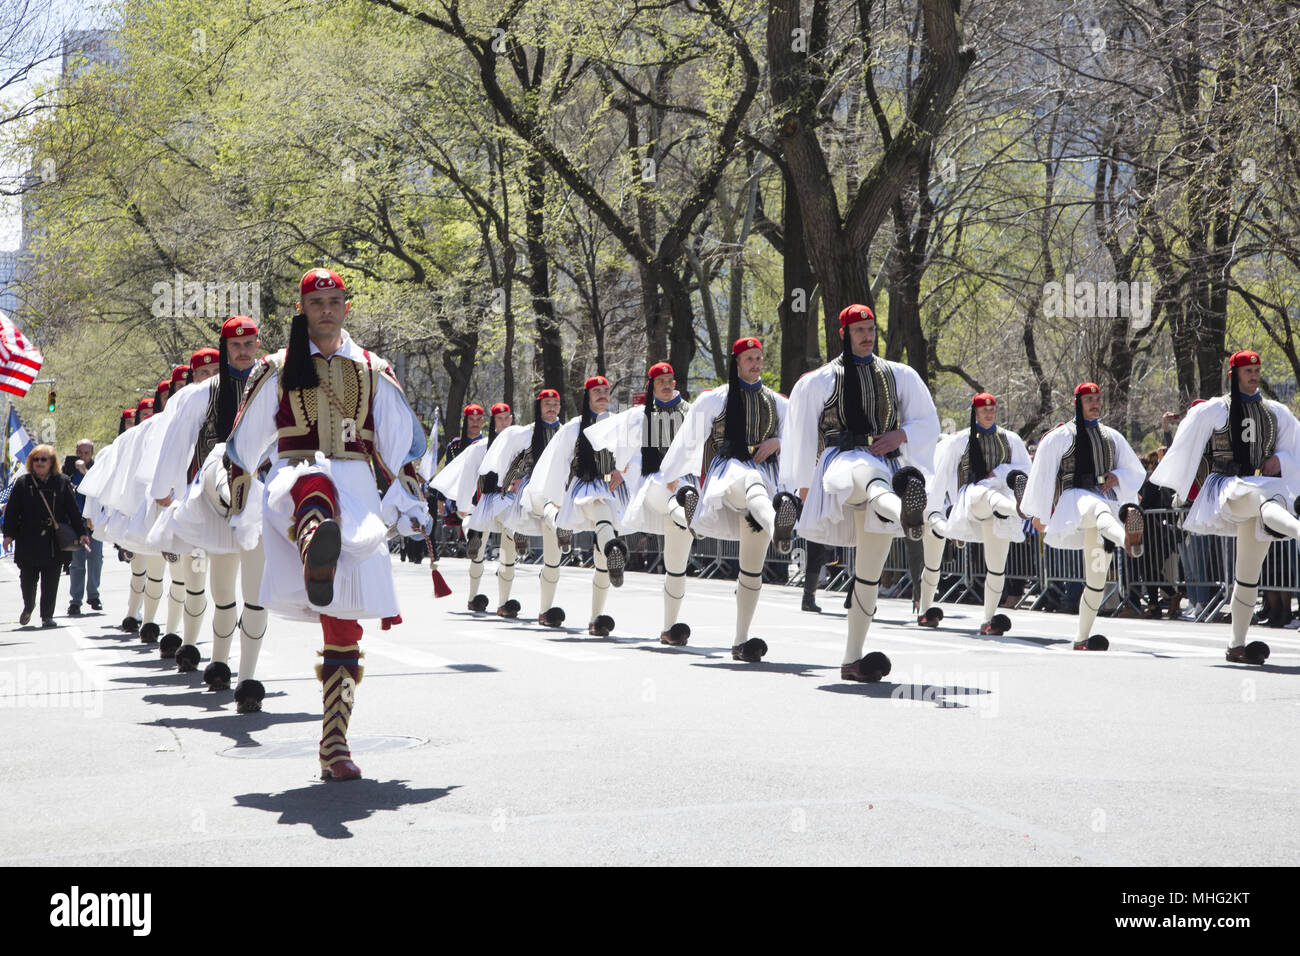 Griechische Independence Day Parade in New York City. Griechische Präsident's Guard März in die Parade auf der 5th Avenue. Stockfoto